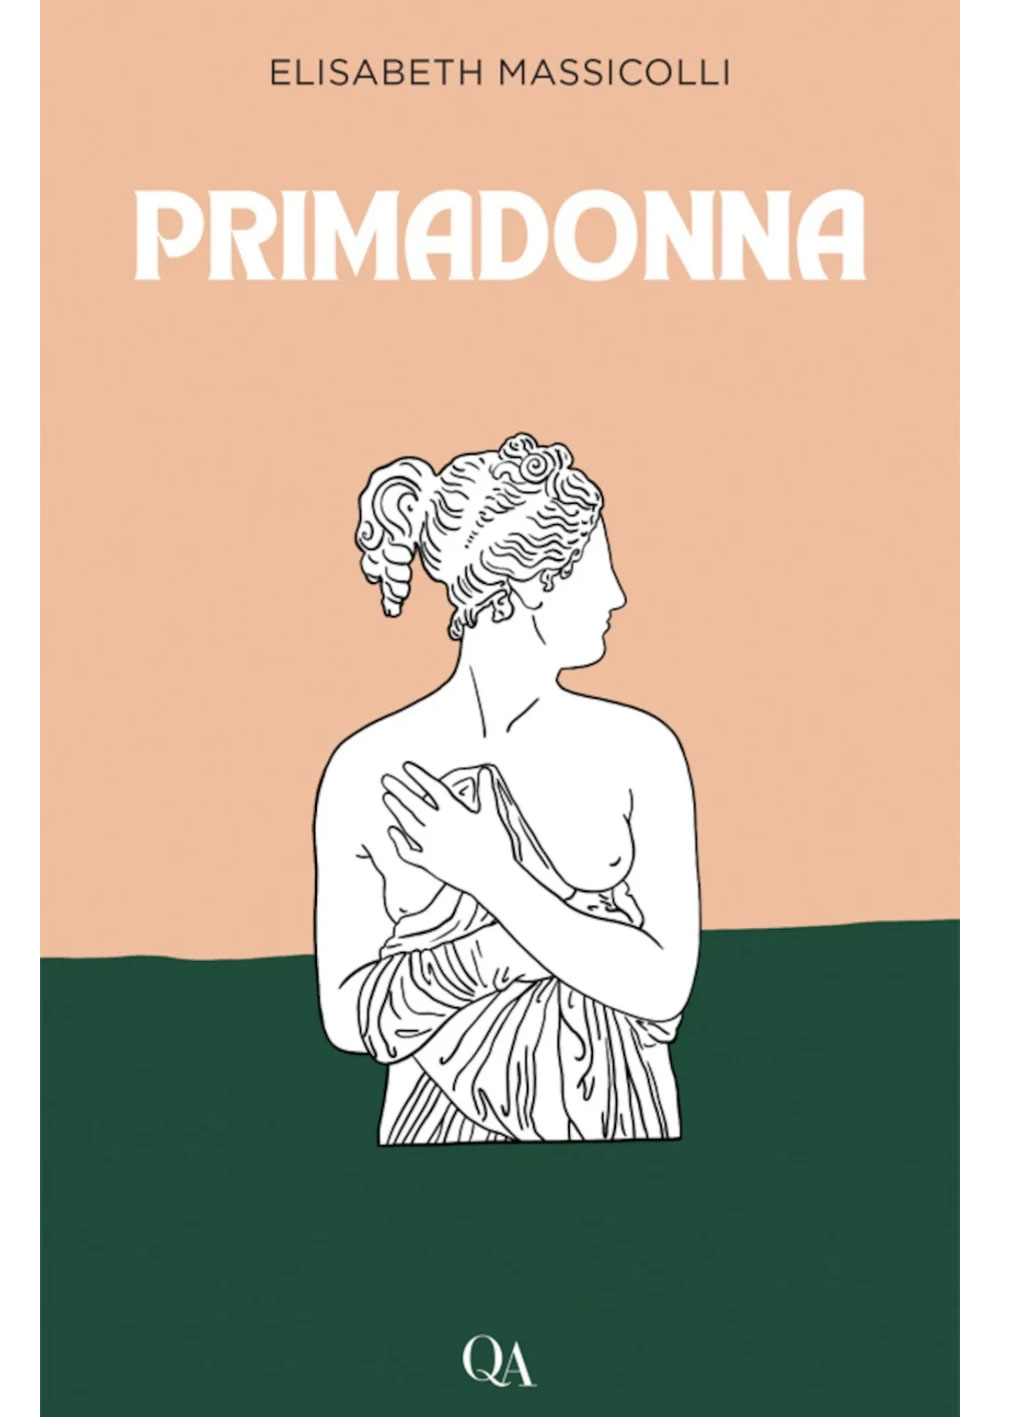 Couverture du livre Primadonna.